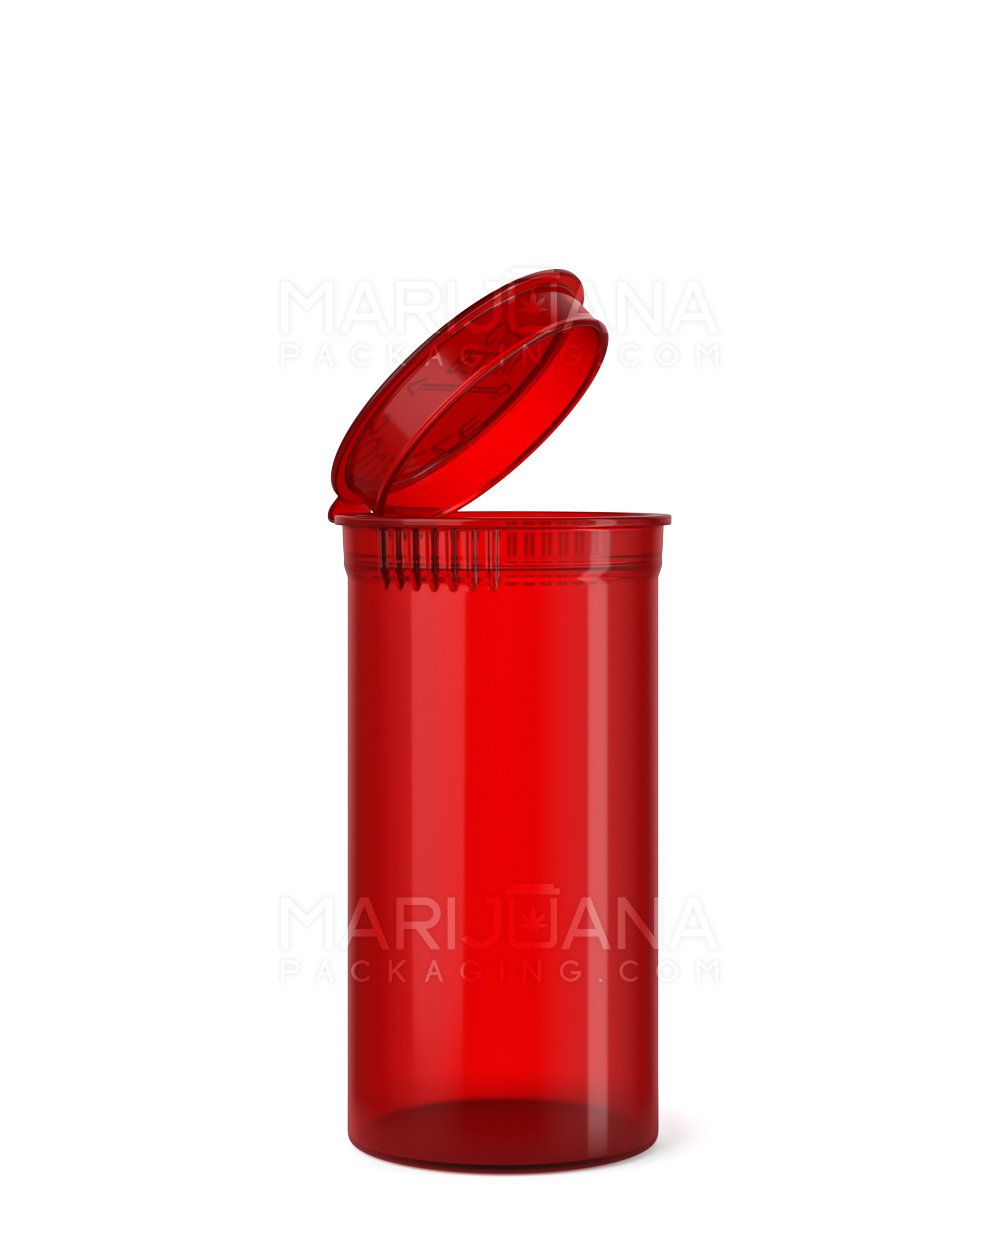 Child Resistant Transparent Red Pop Top Bottles | 13dr - 2g | Sample - 1